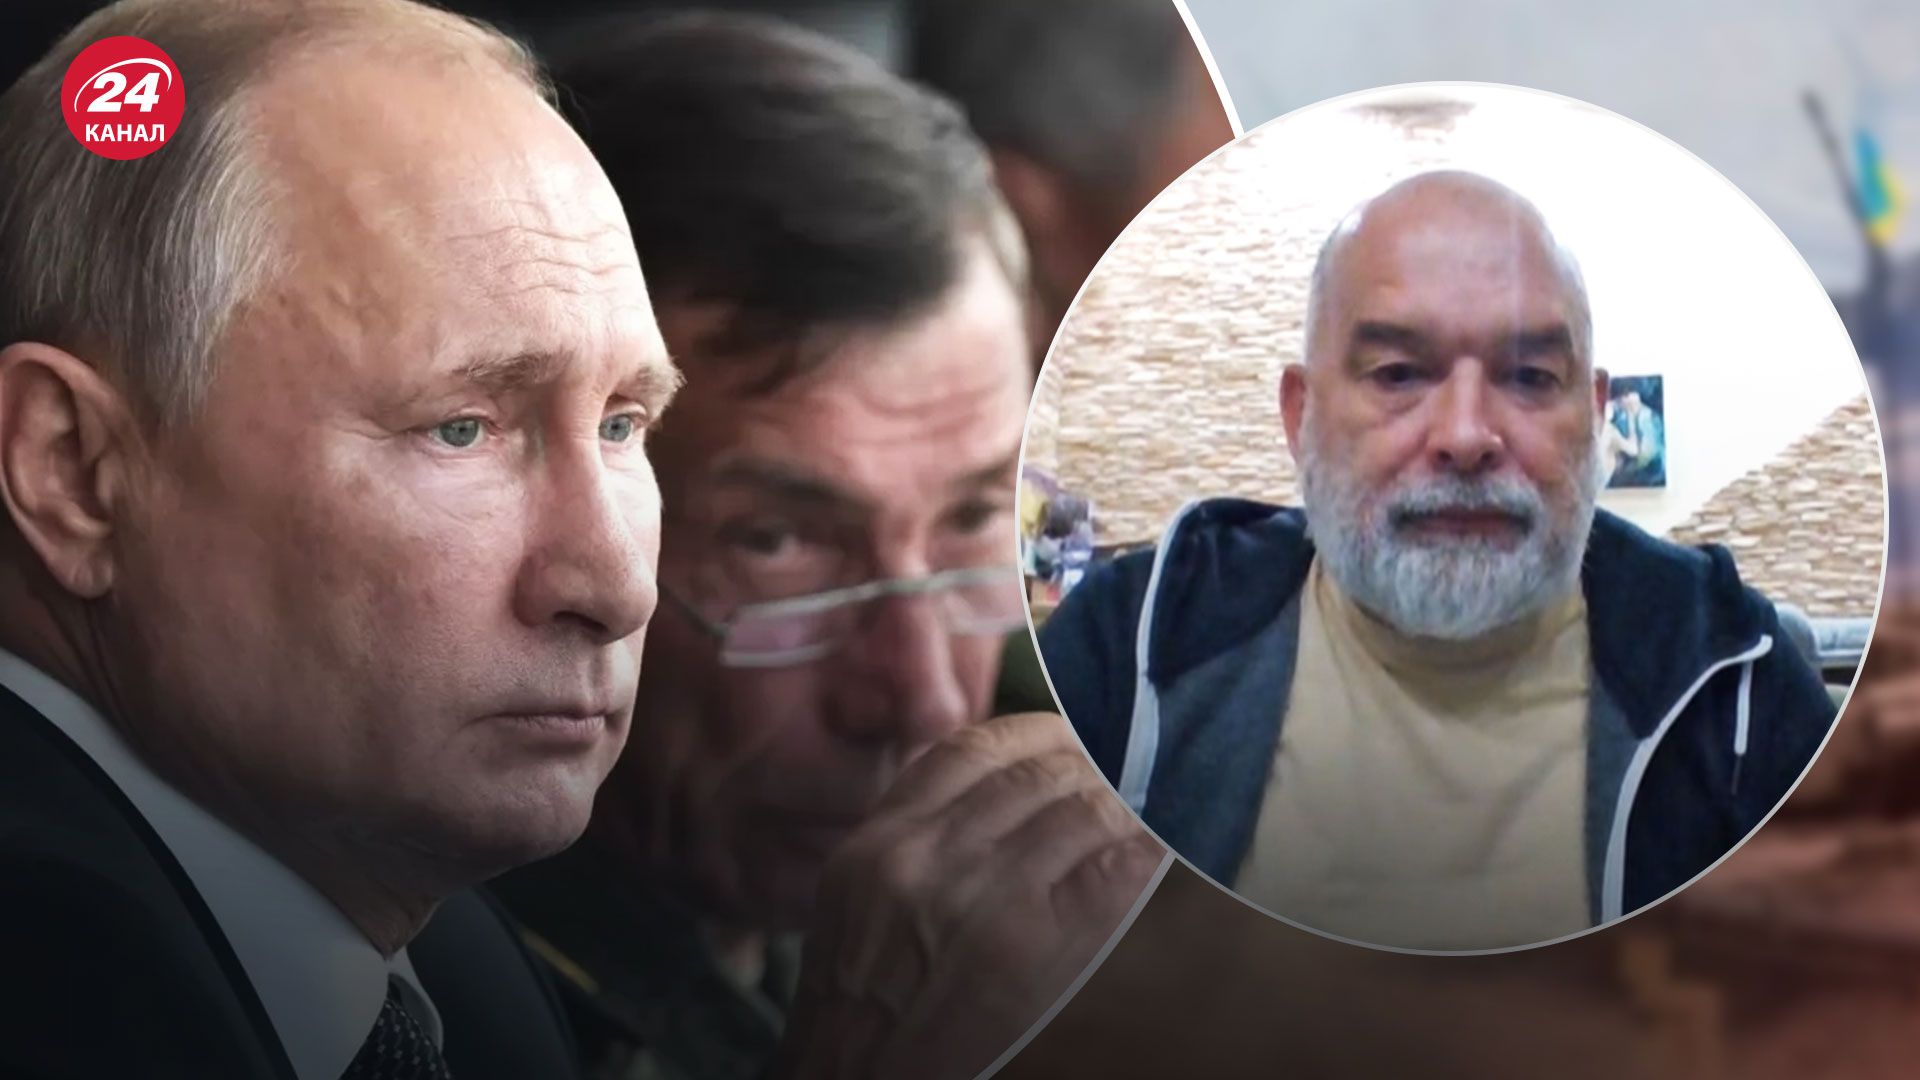 Частичная мобилизация России – какие последствия будет иметь для Кремля